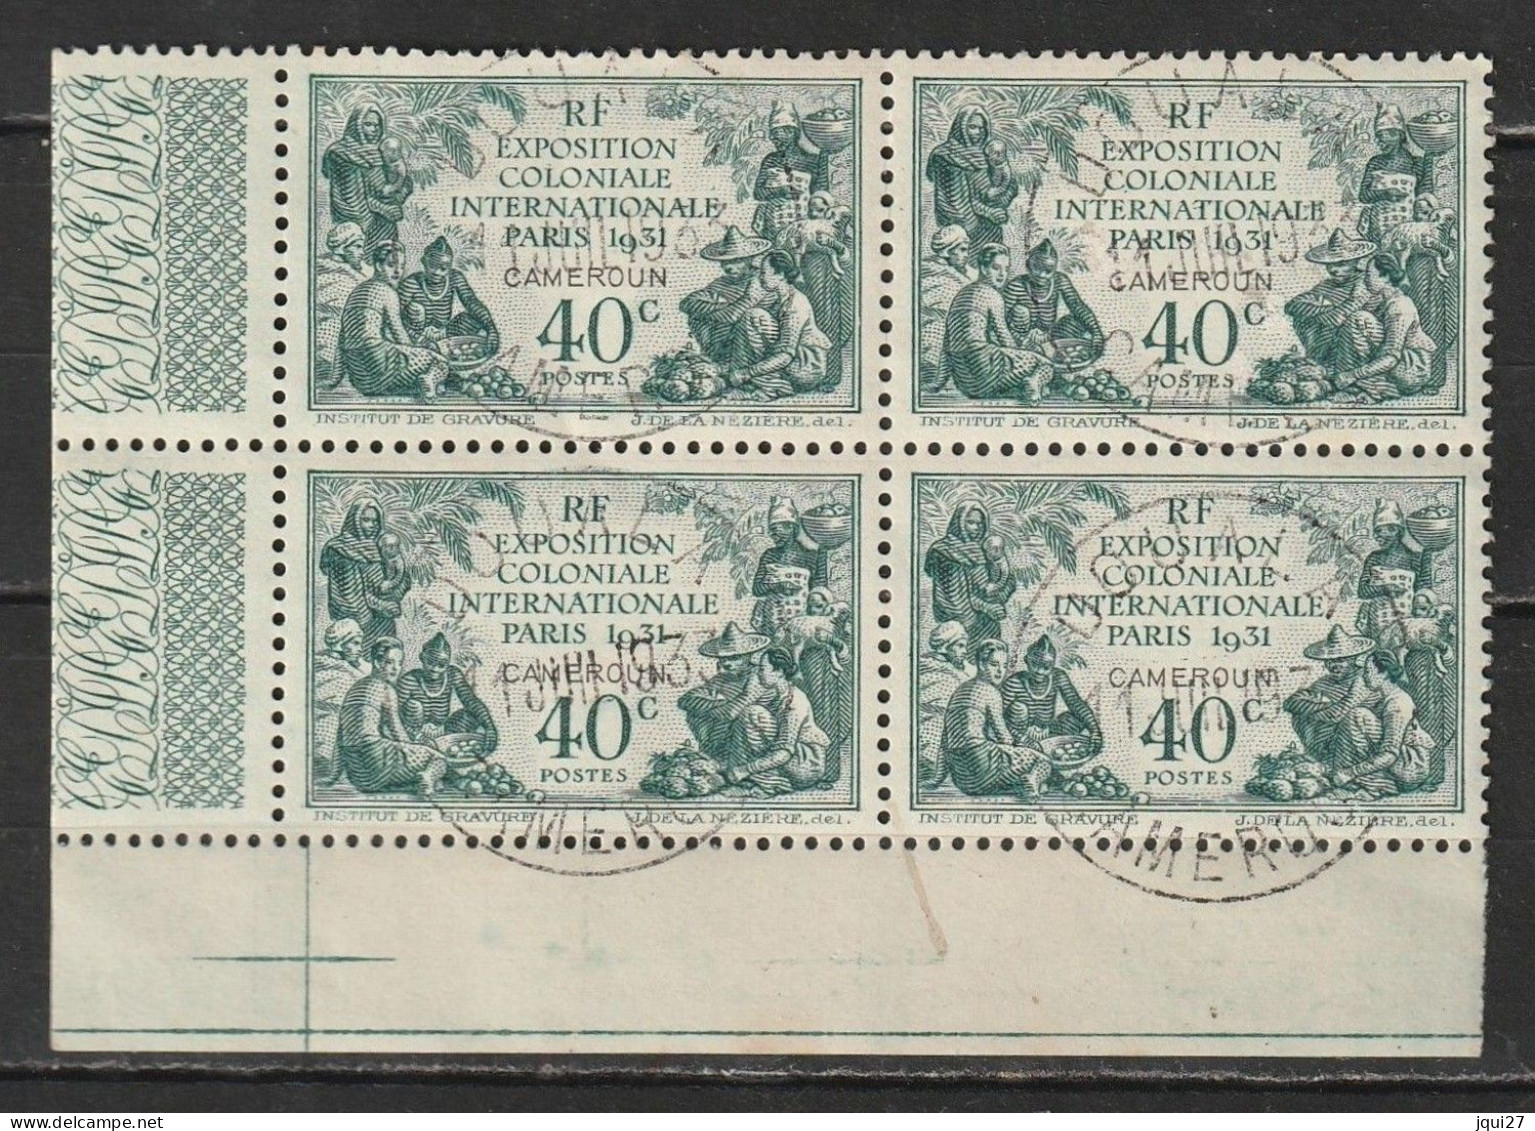 Cameroun N° 149 Oblitération Douala 11 JUIL 1931 Exposition Coloniale De Paris 1931 - Used Stamps